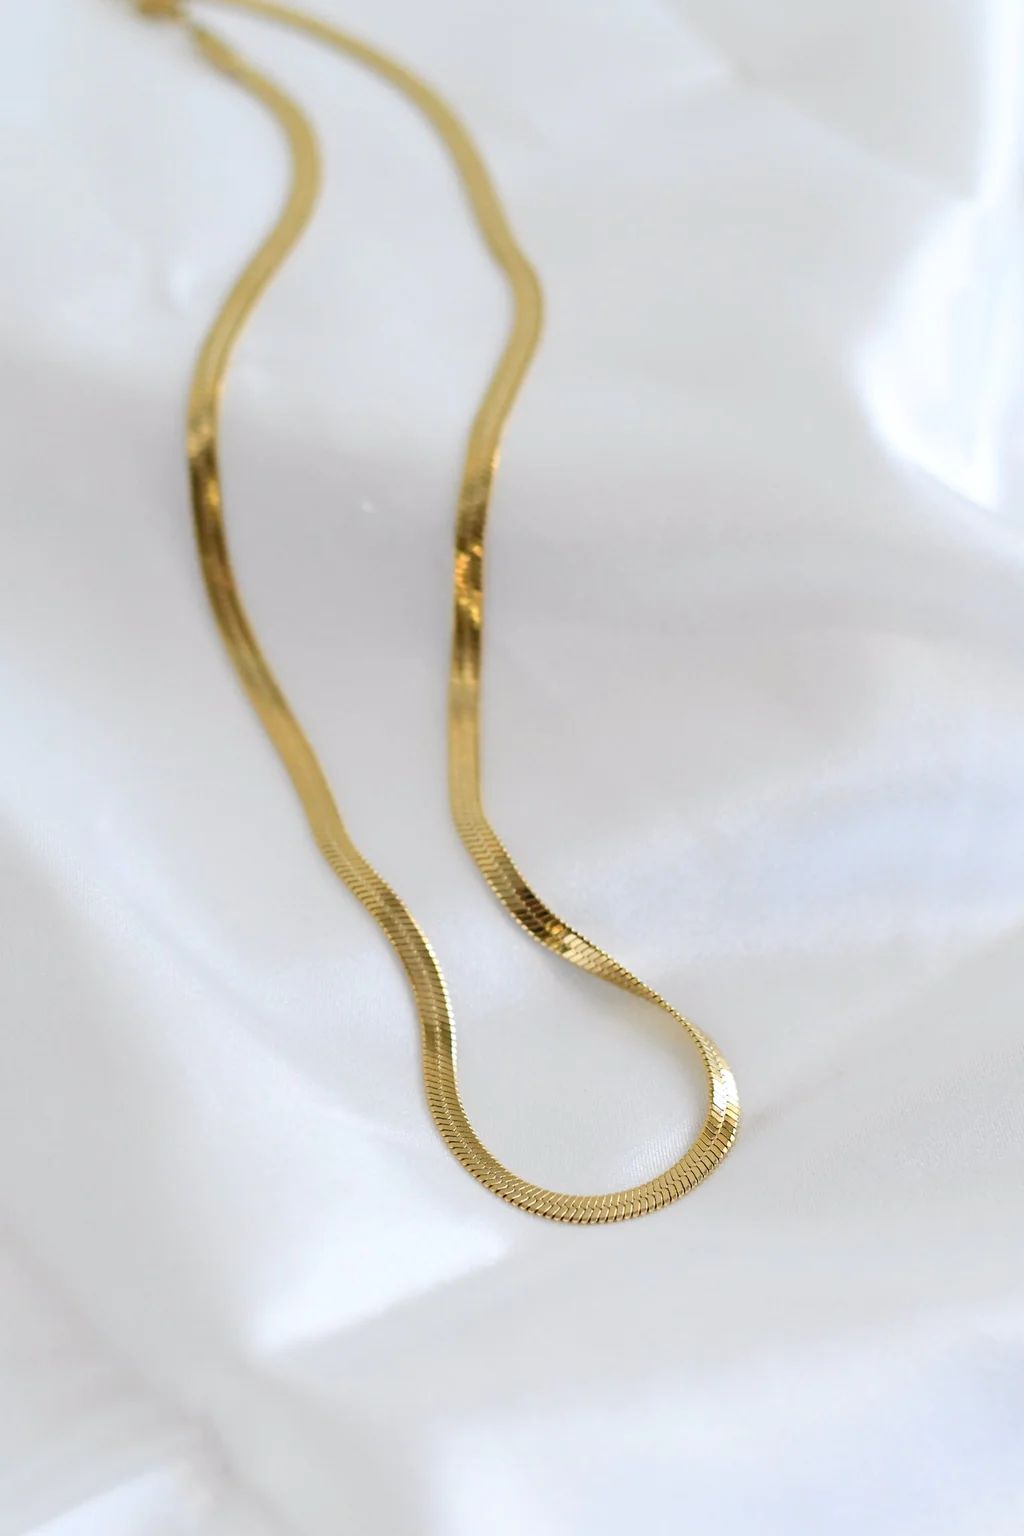 Thin Herringbone Gold Plated Chain | Mod&Soul